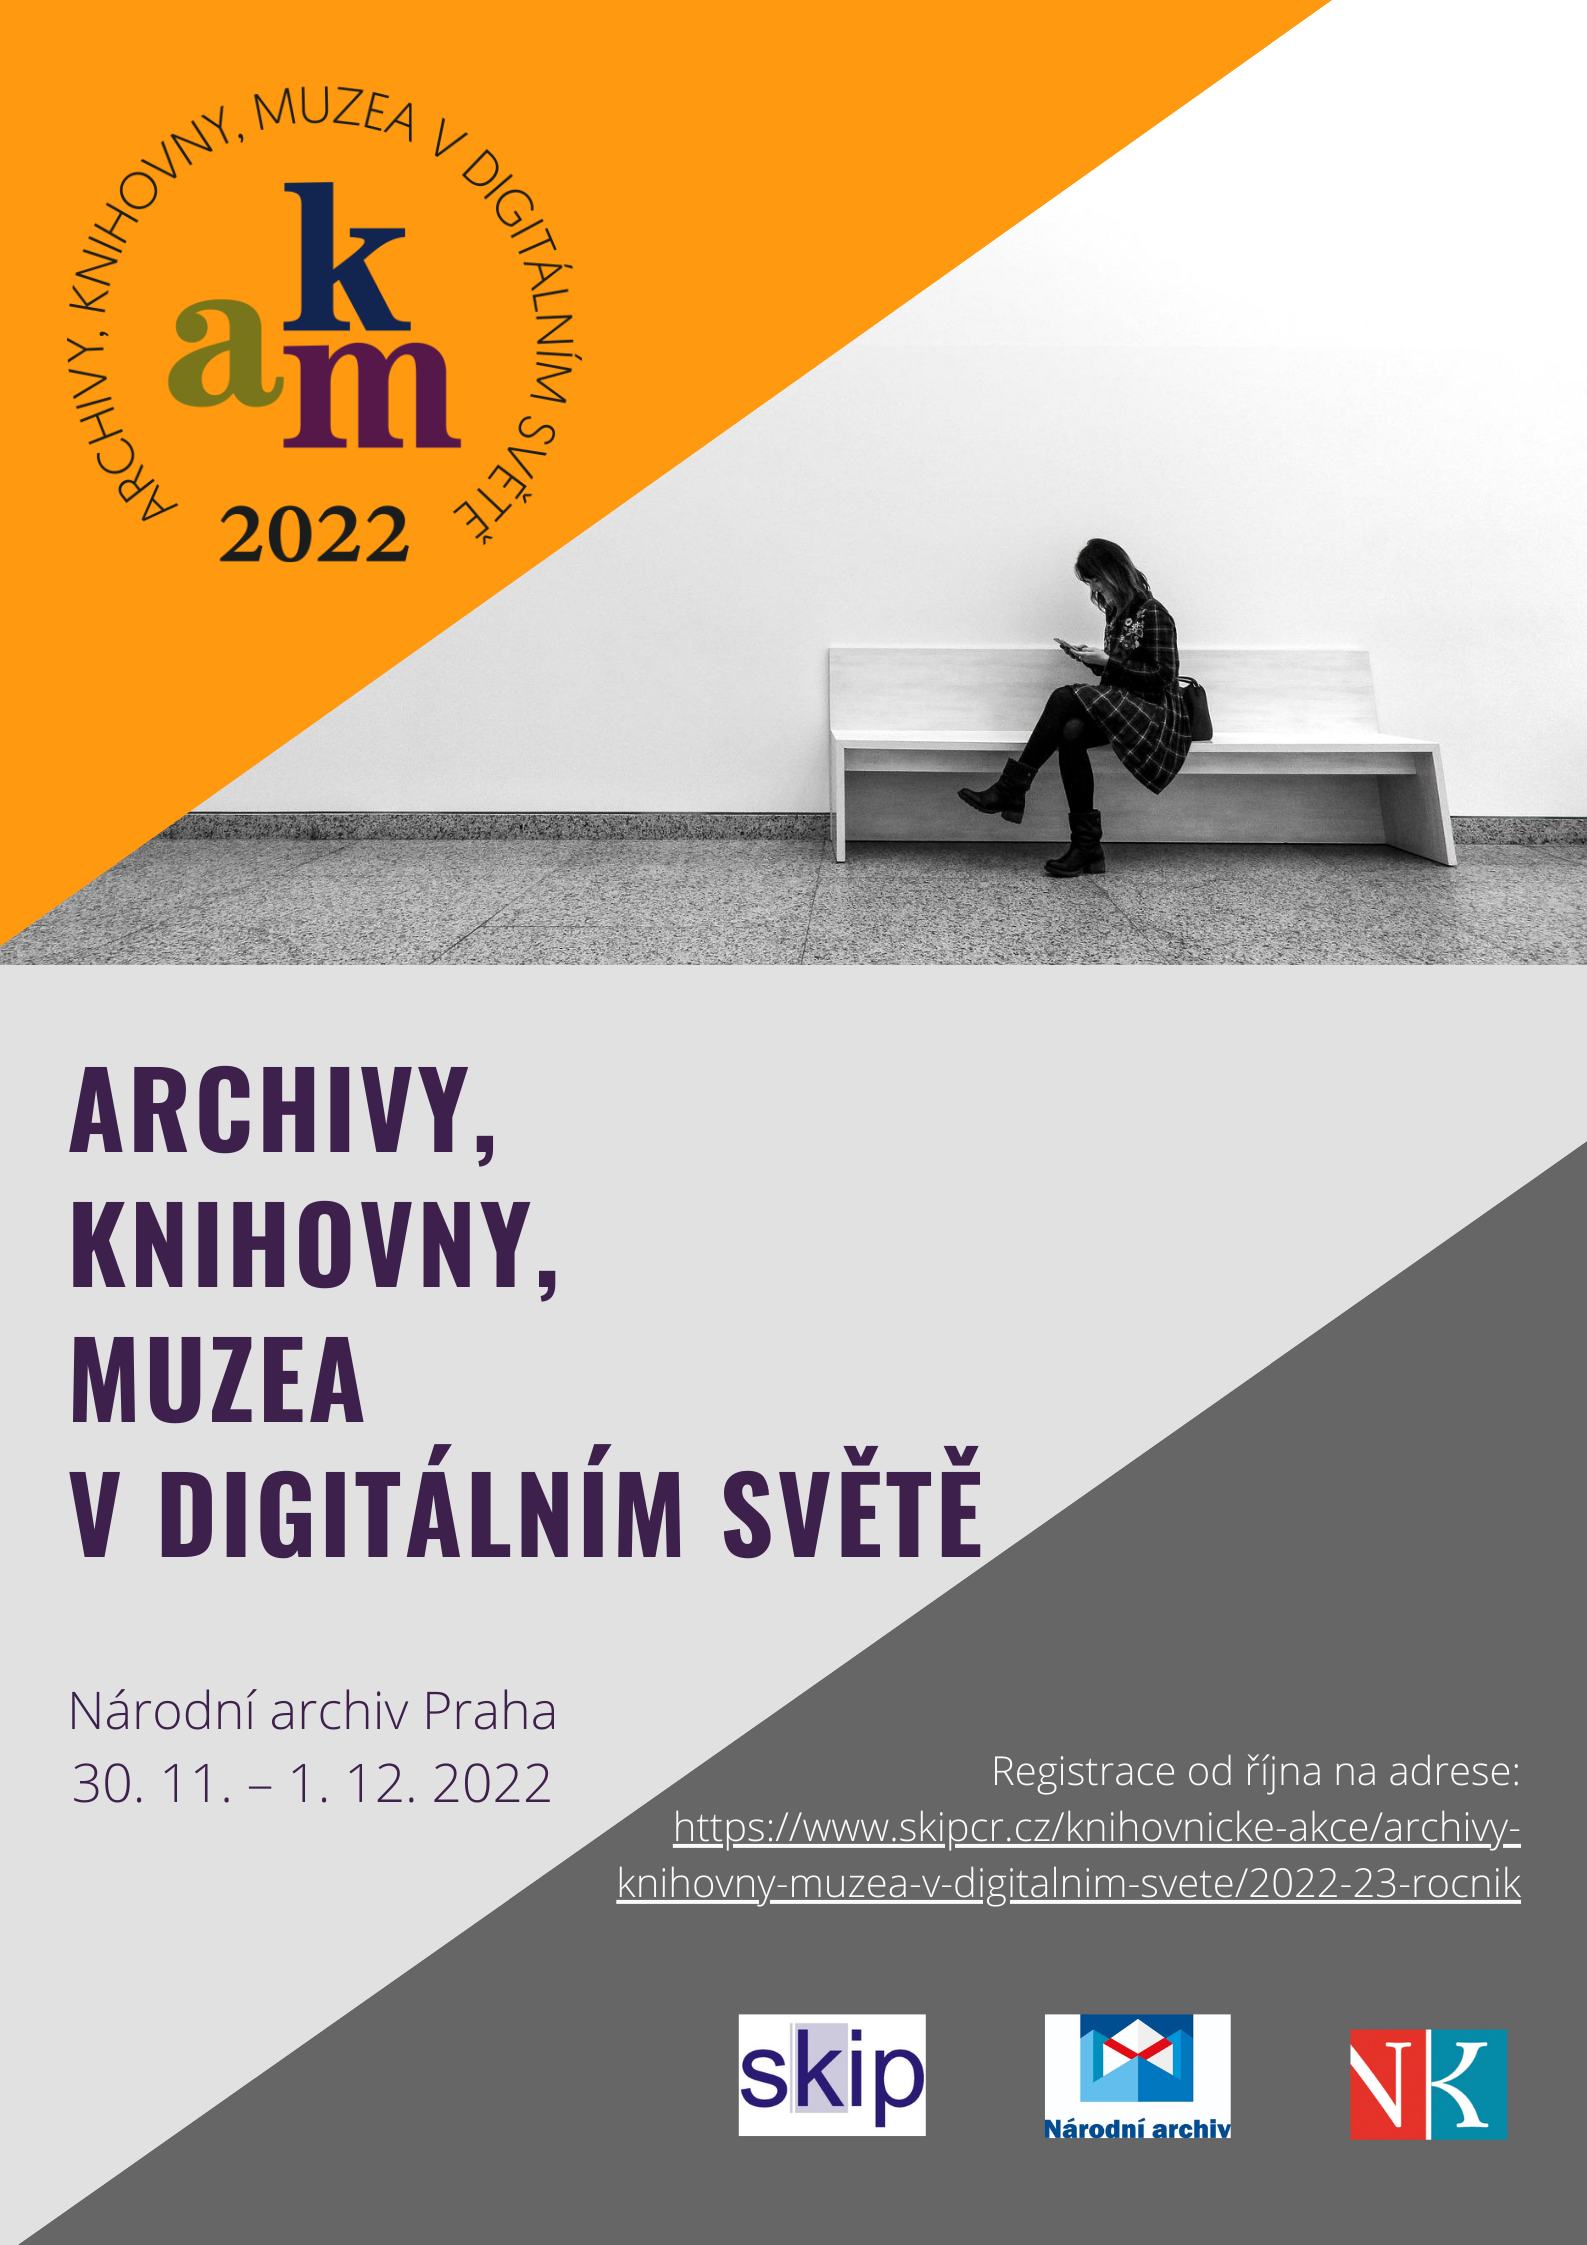 Upoutávka na konferenci Archivy, knihovny, muzea v digitálním světě 2022